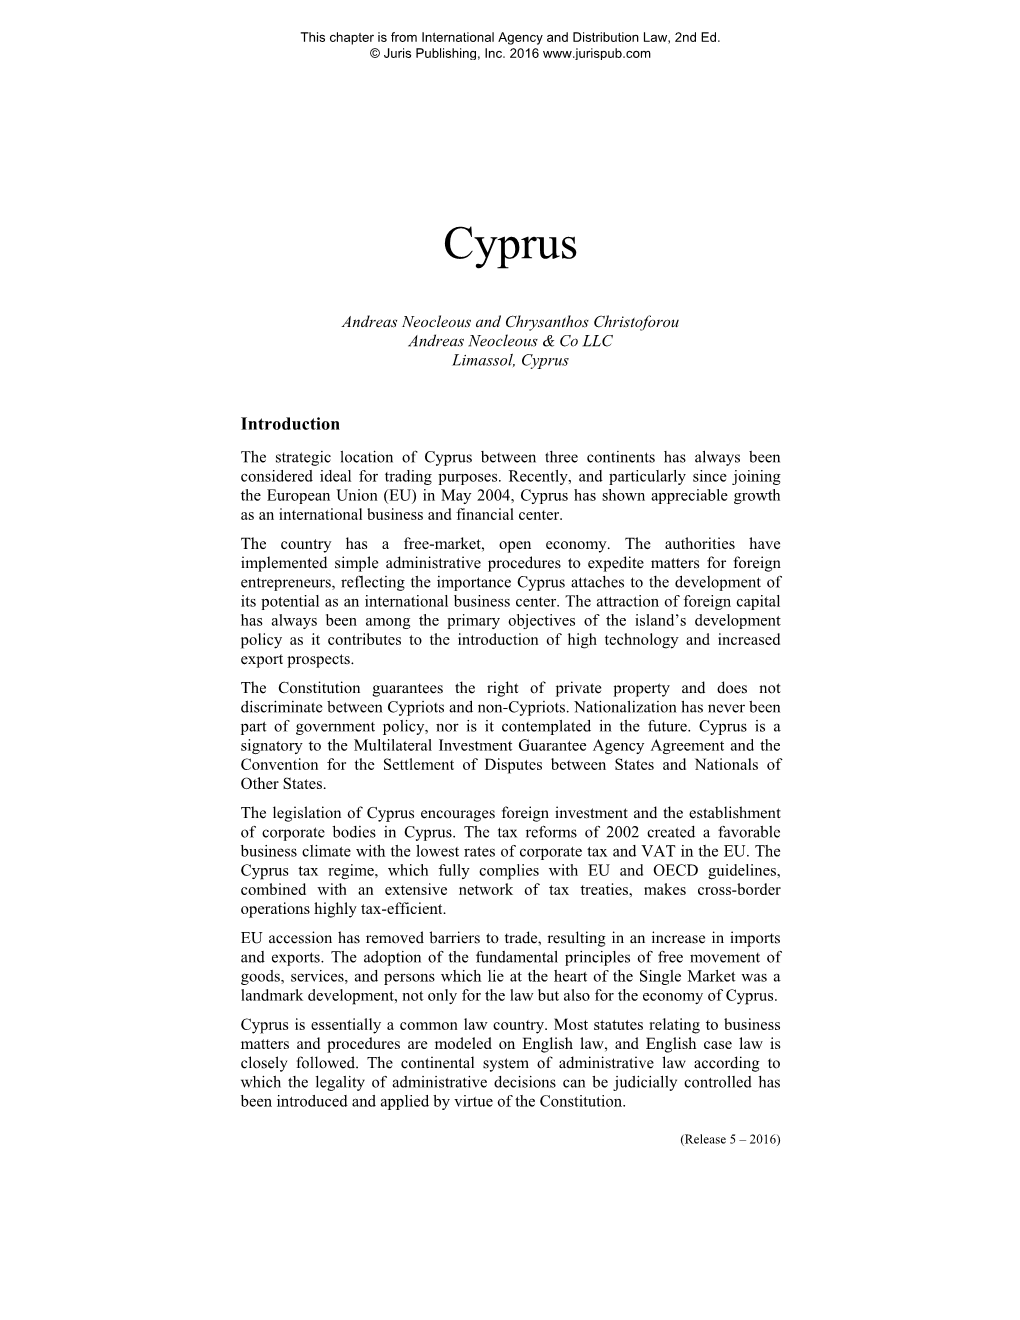 Cyprus-International-Agency-Law.Pdf